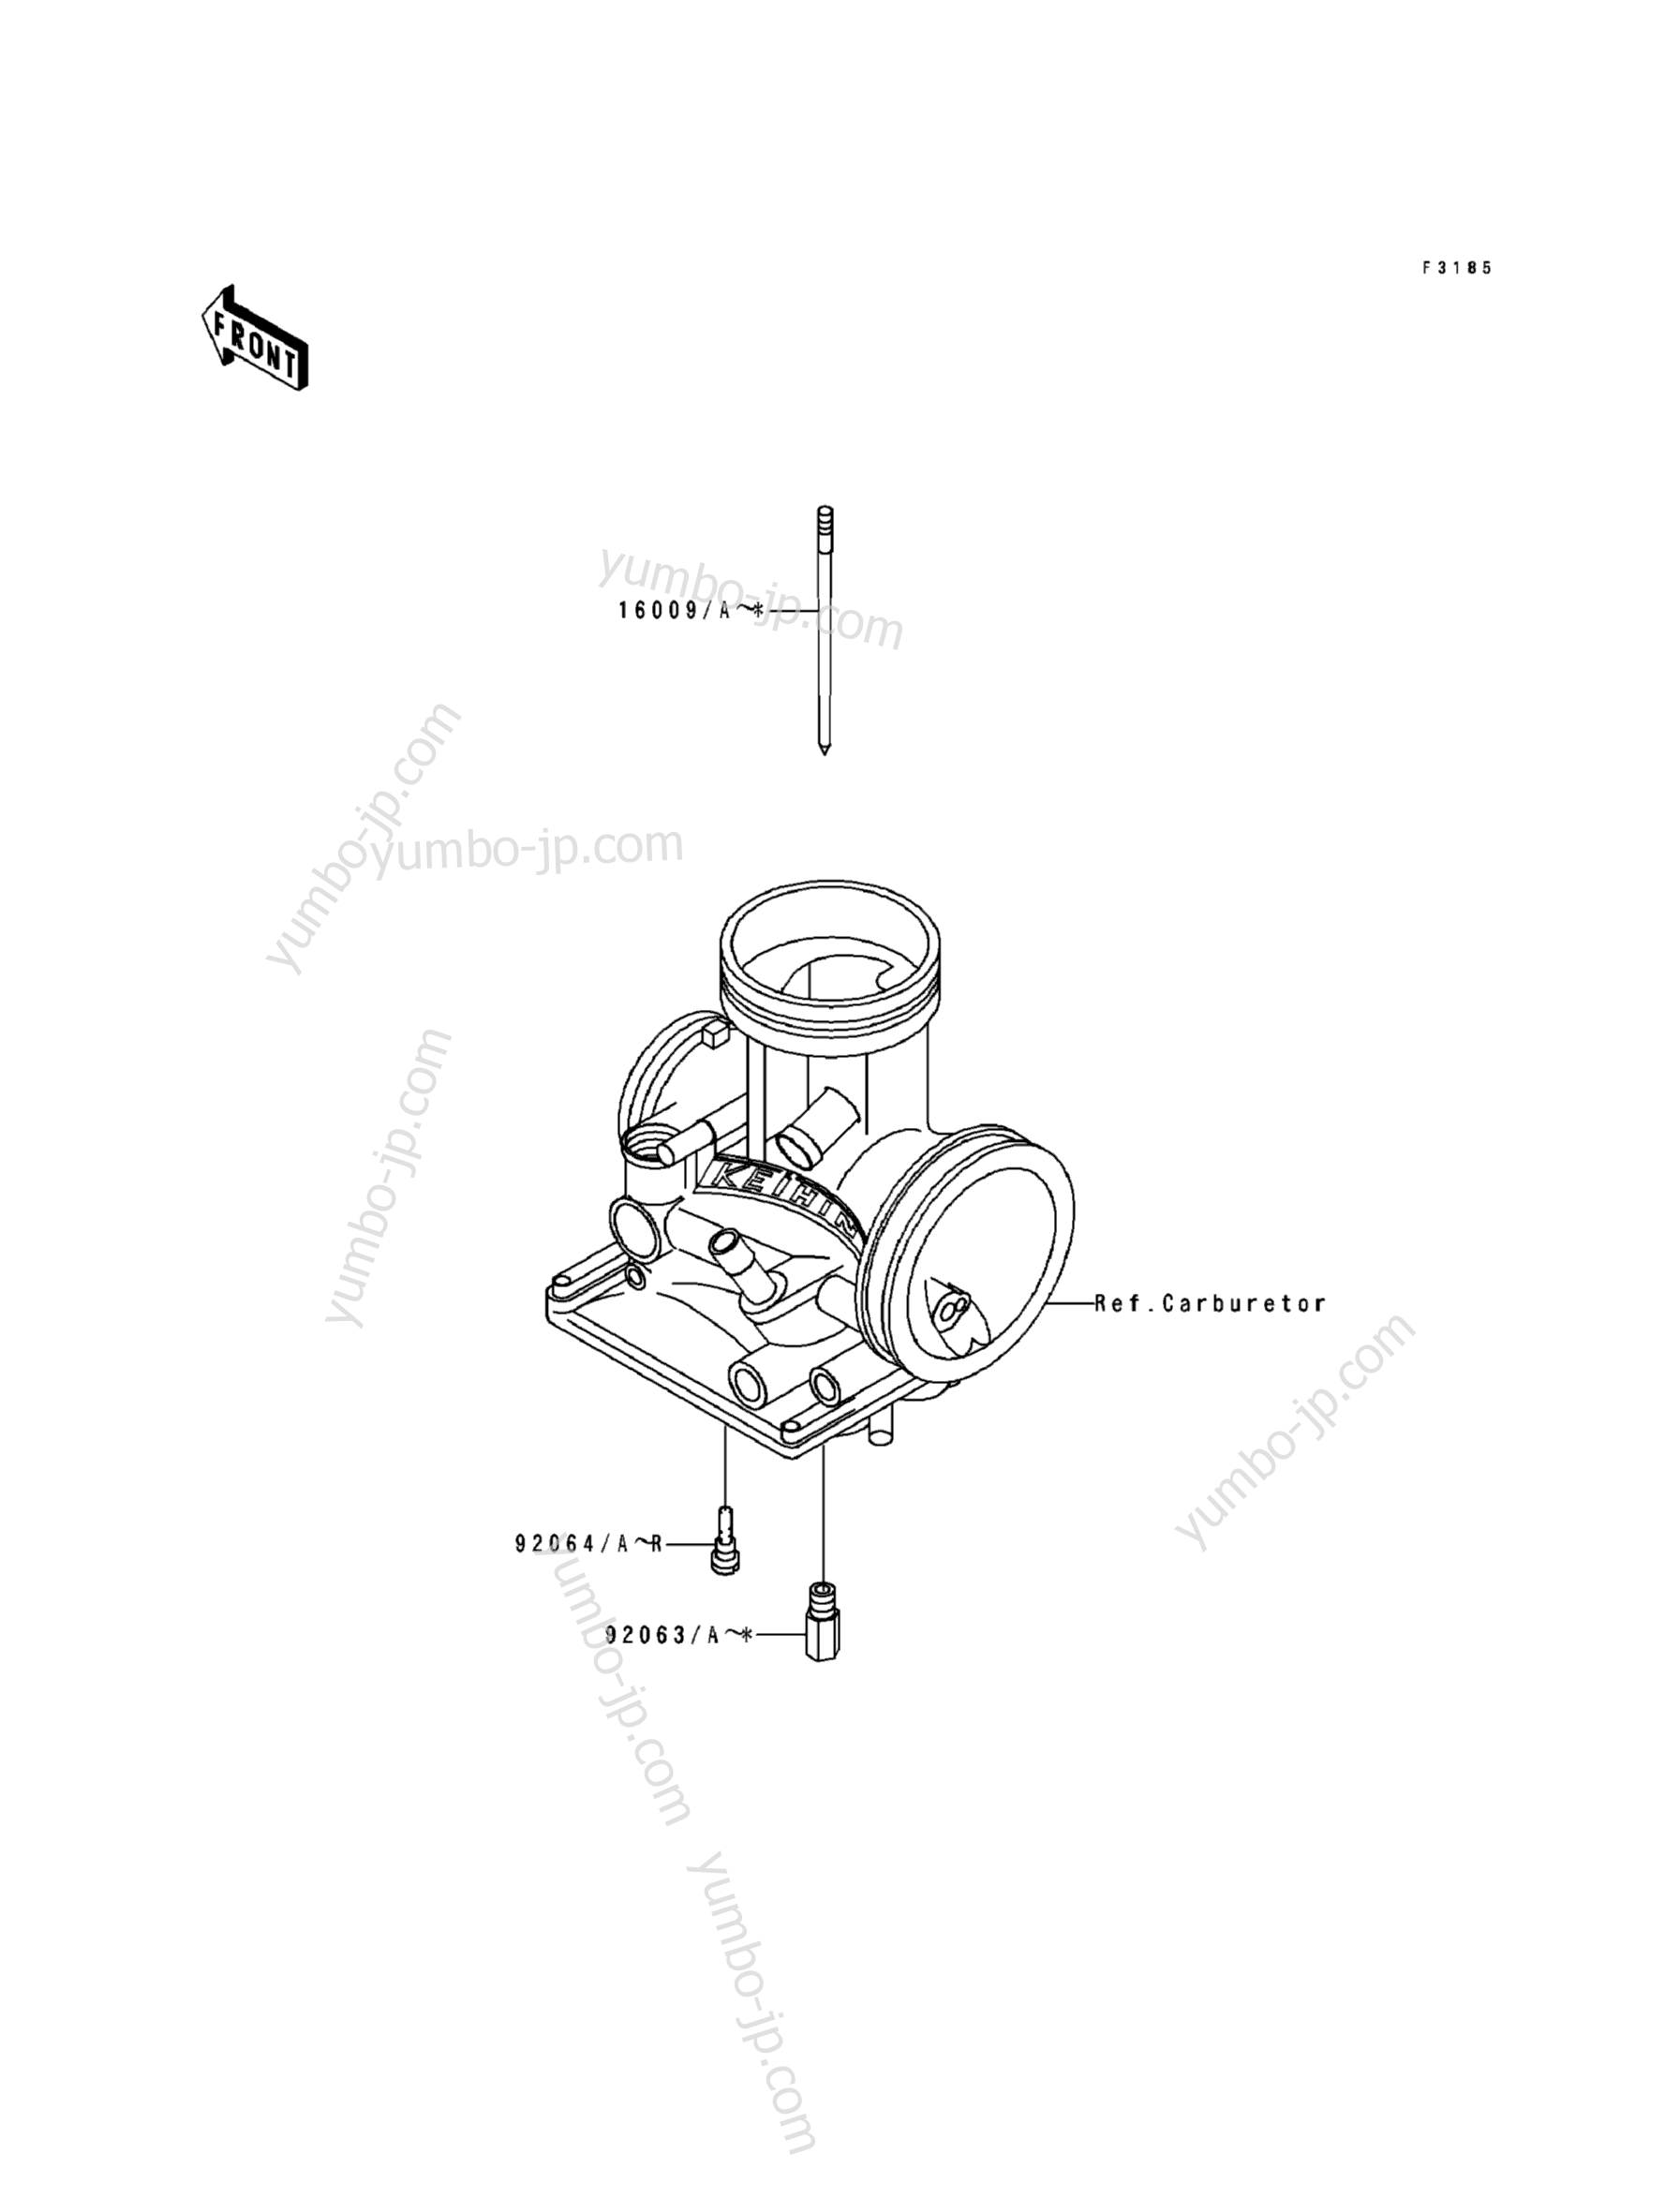 Optional Parts(4/4) for motorcycles KAWASAKI KX500 (KX500-E1) 1989 year